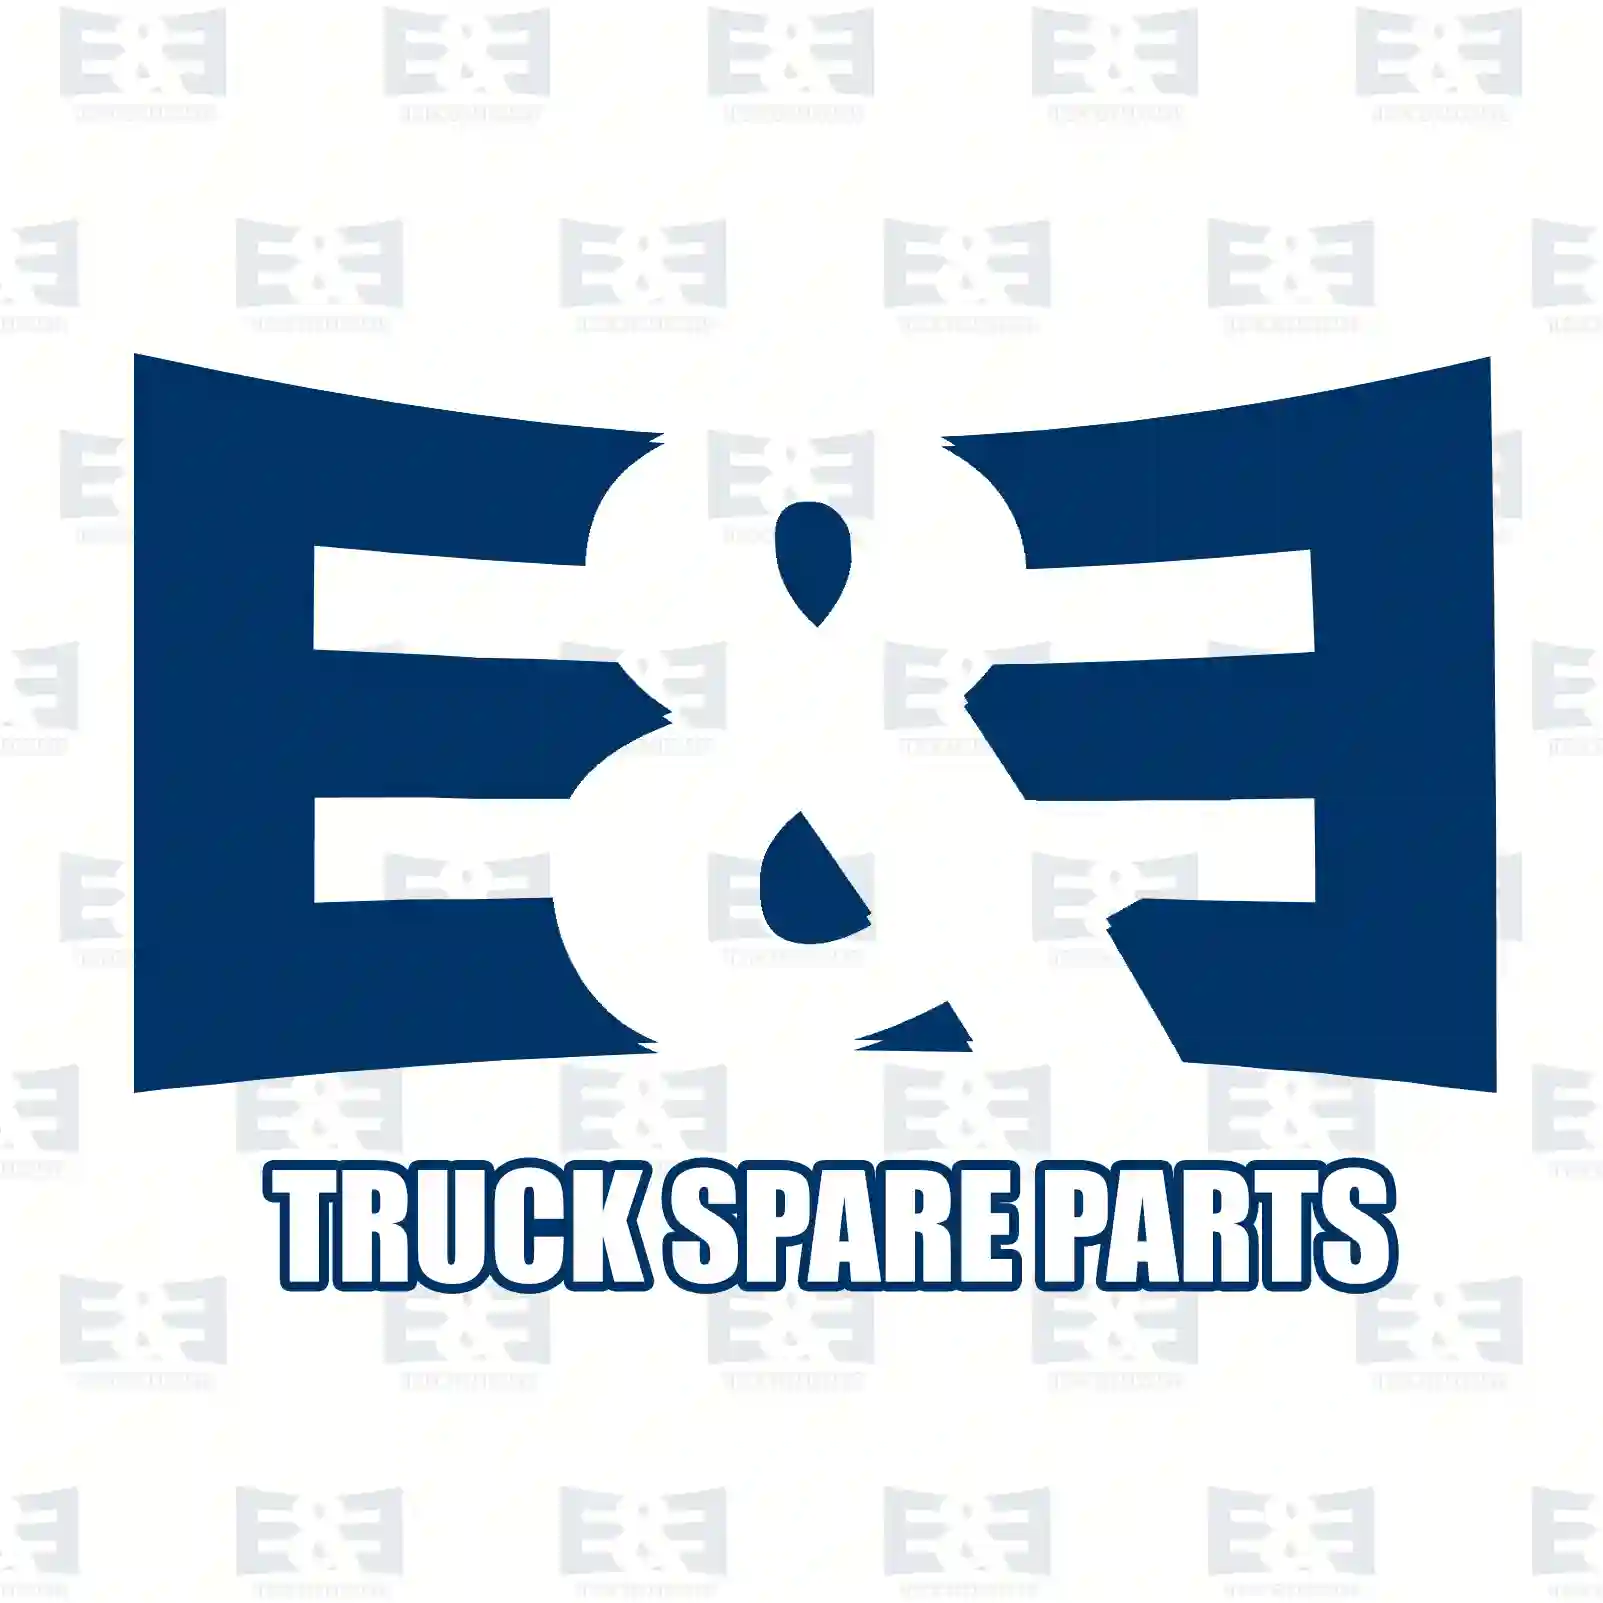 Overhaul kit, compressor, 2E2296494, 51541006052 ||  2E2296494 E&E Truck Spare Parts | Truck Spare Parts, Auotomotive Spare Parts Overhaul kit, compressor, 2E2296494, 51541006052 ||  2E2296494 E&E Truck Spare Parts | Truck Spare Parts, Auotomotive Spare Parts